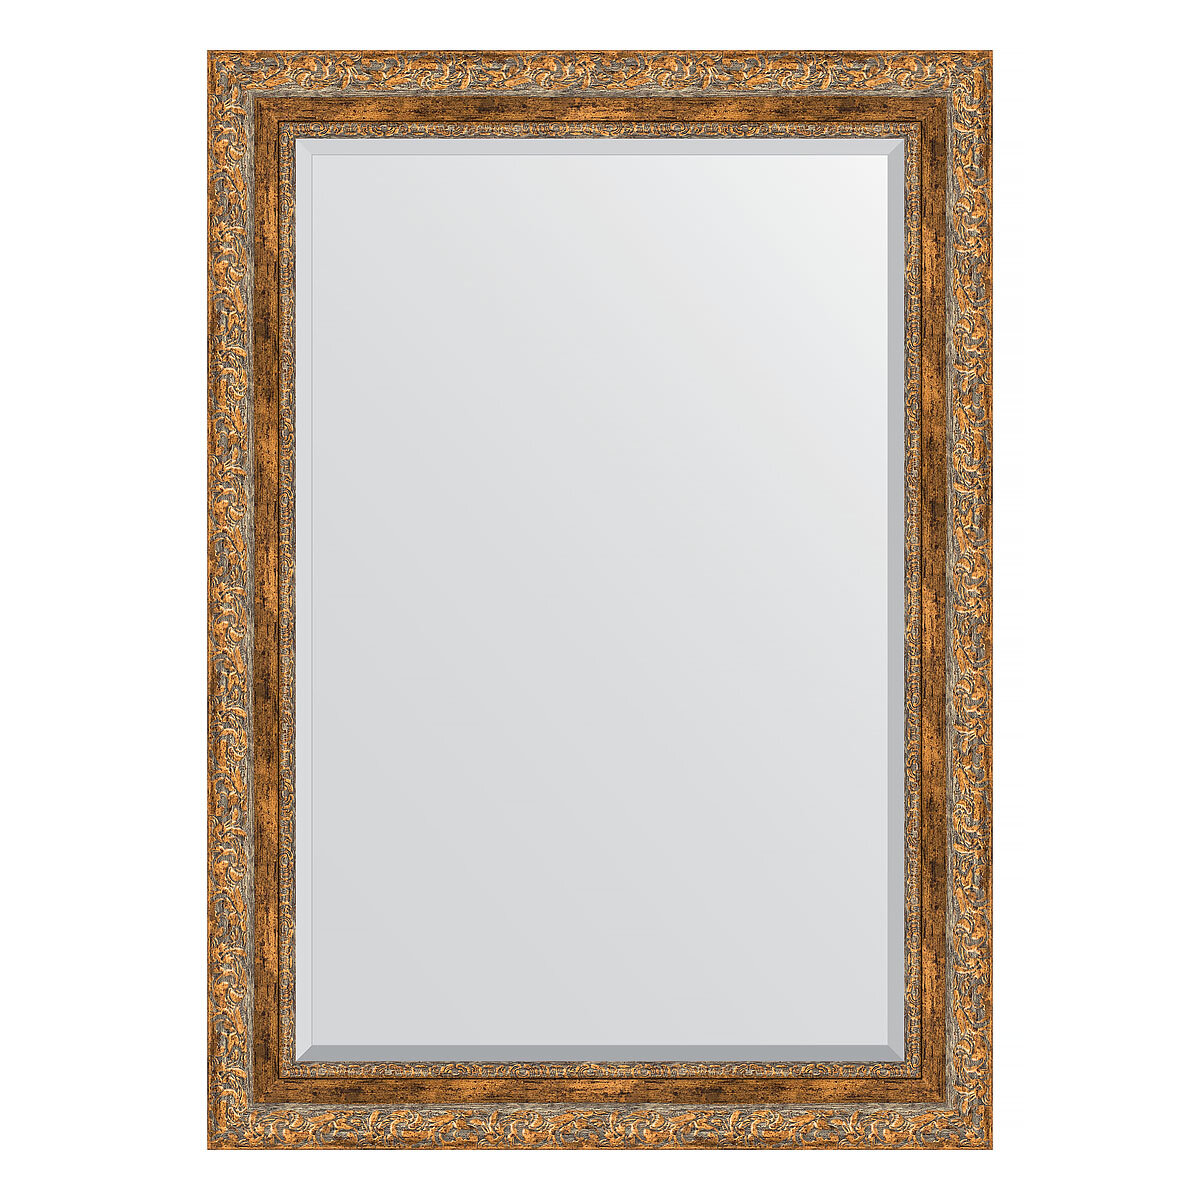 Зеркало настенное с фацетом EVOFORM в багетной раме виньетка античная бронза, 75х105 см, для гостиной, прихожей, спальни и ванной комнаты, BY 3462